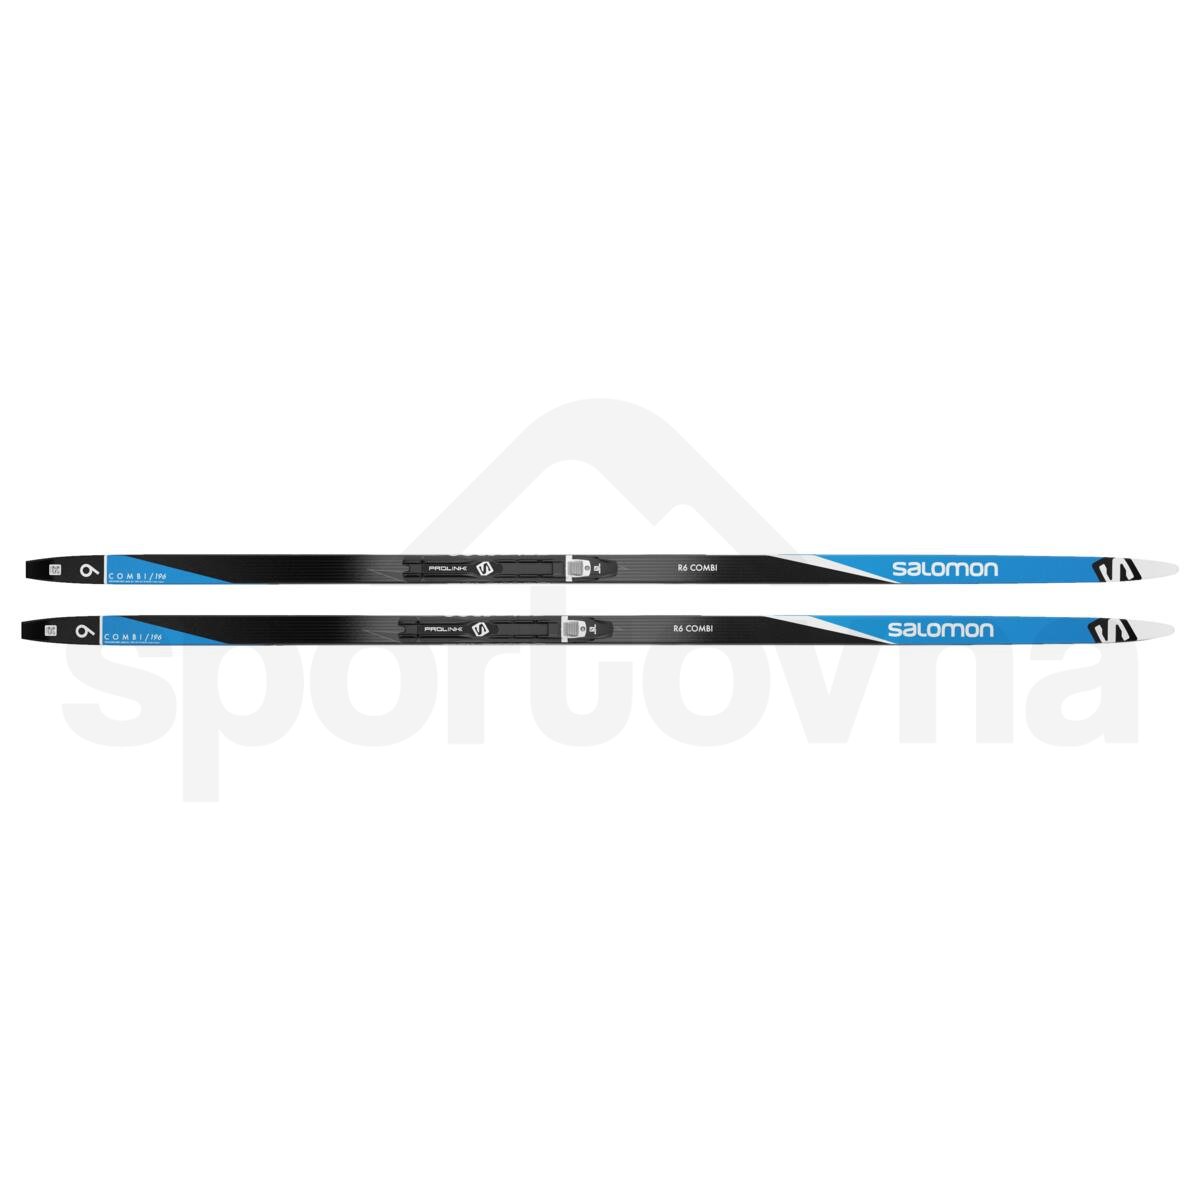 Běžky Salomon R6 Combi + vázání Prolink Pro Combi - černá/modrá